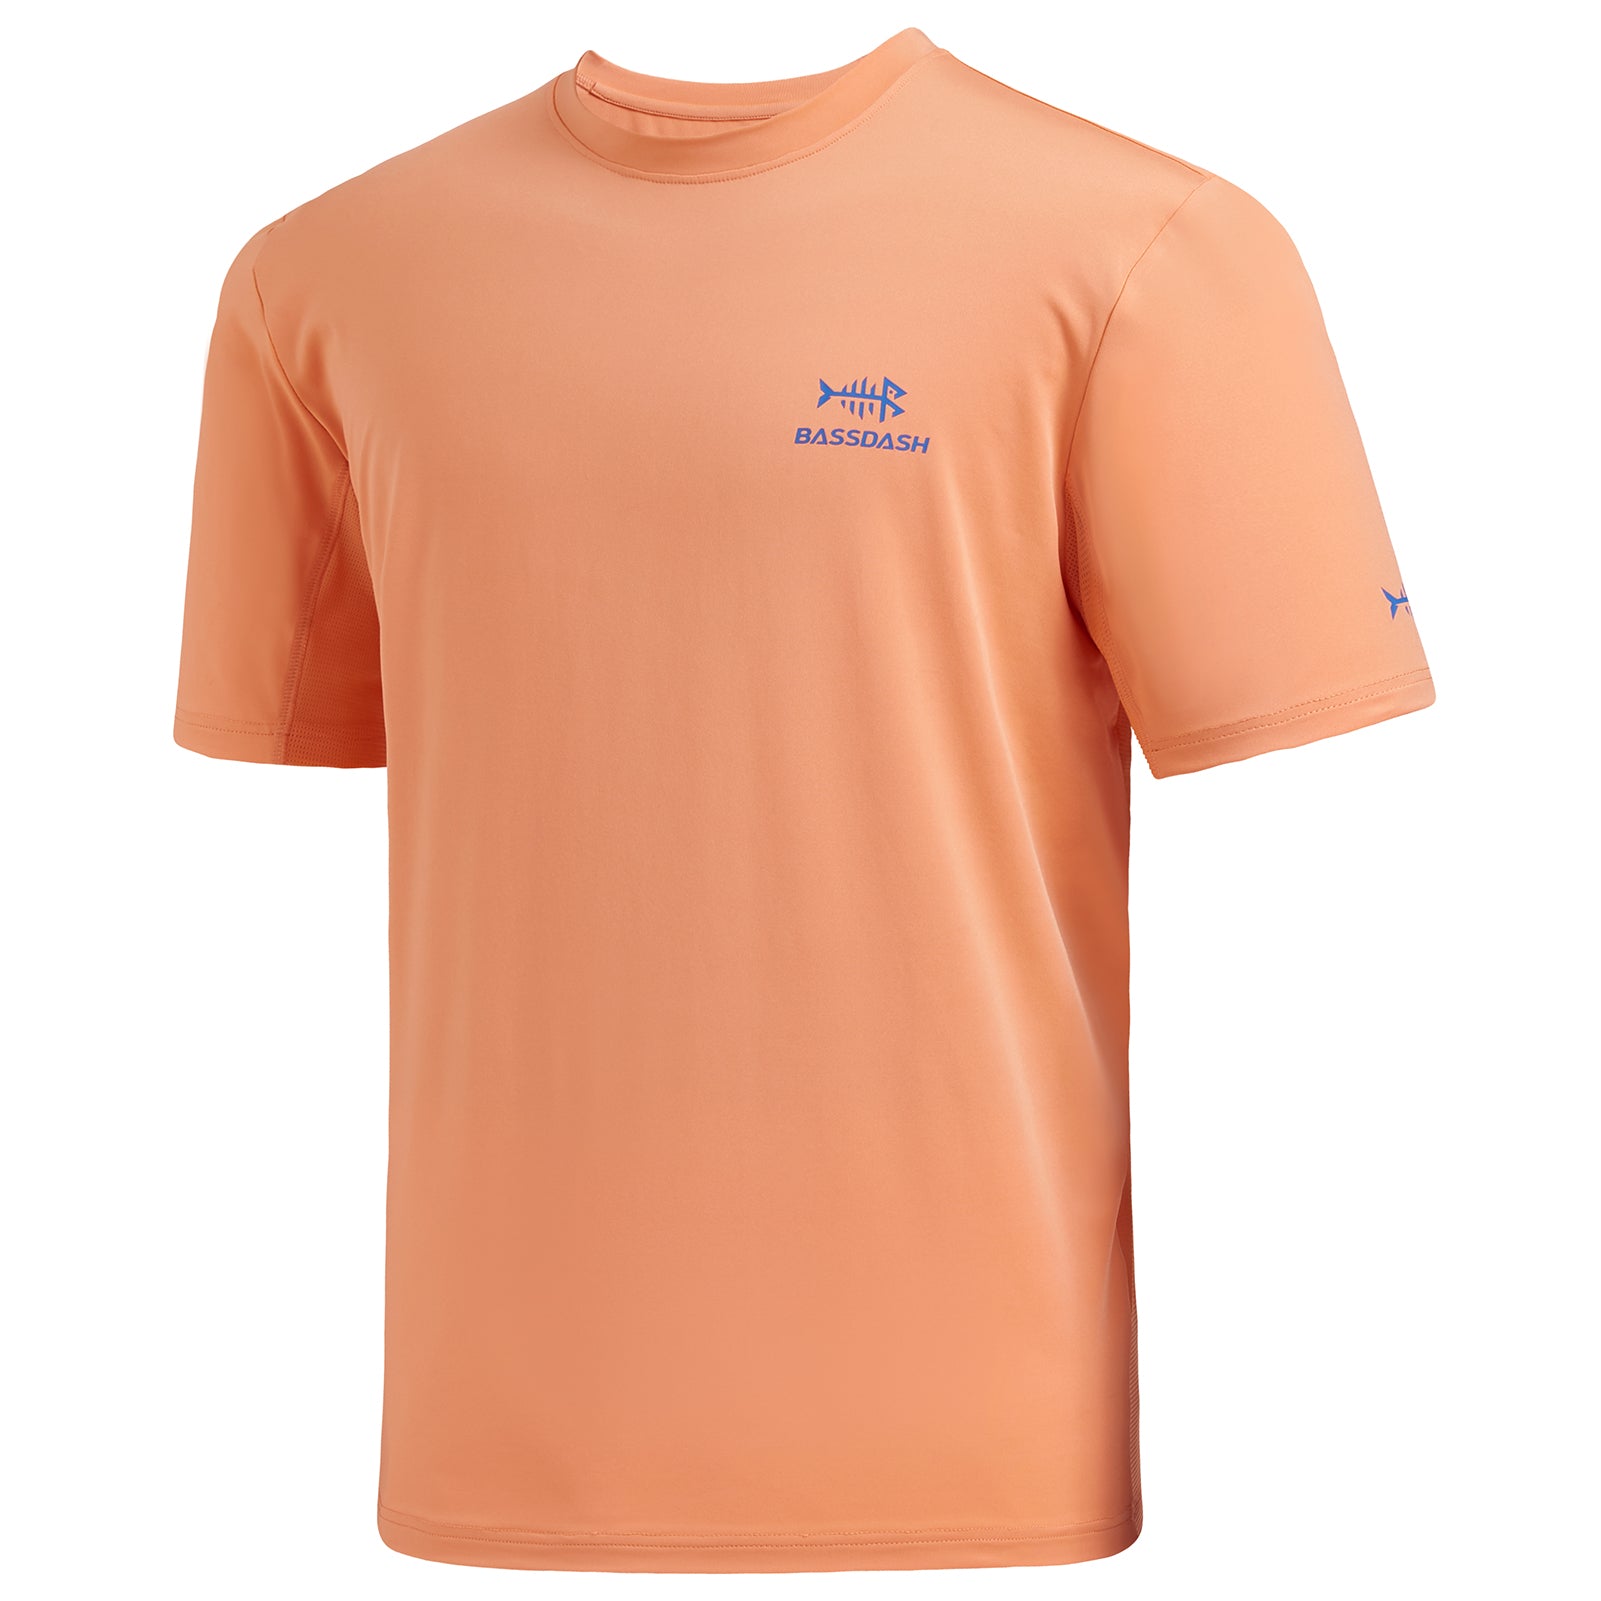 Bassdash Premium Fishing Shirt with Neck Gaiter  Best Price Long Sleeve  Fishing Shirt 